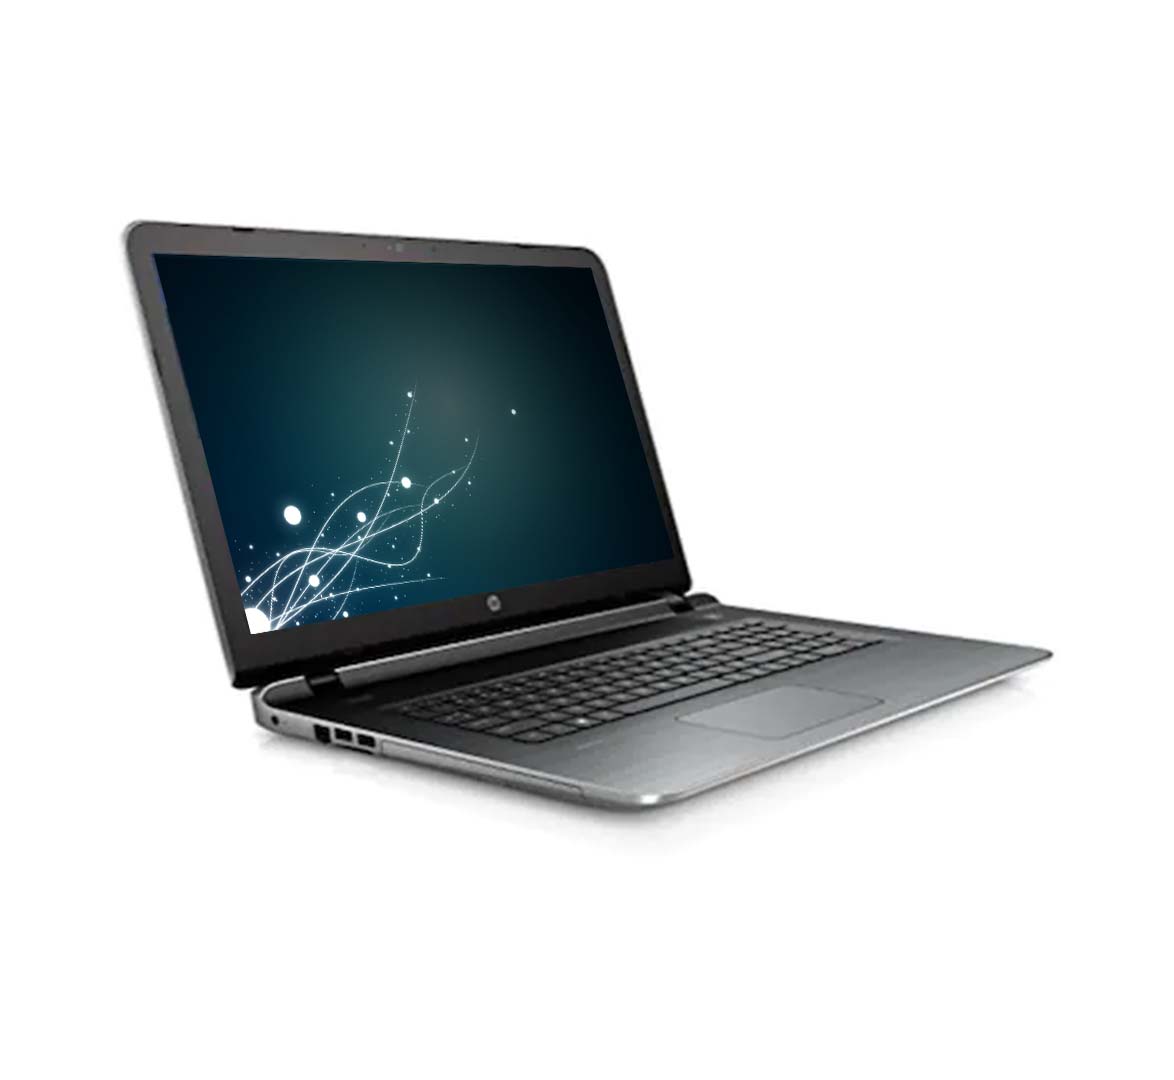 HP Pavilion 17-G161US Business Laptop, Intel Core i5-5th Gen CPU